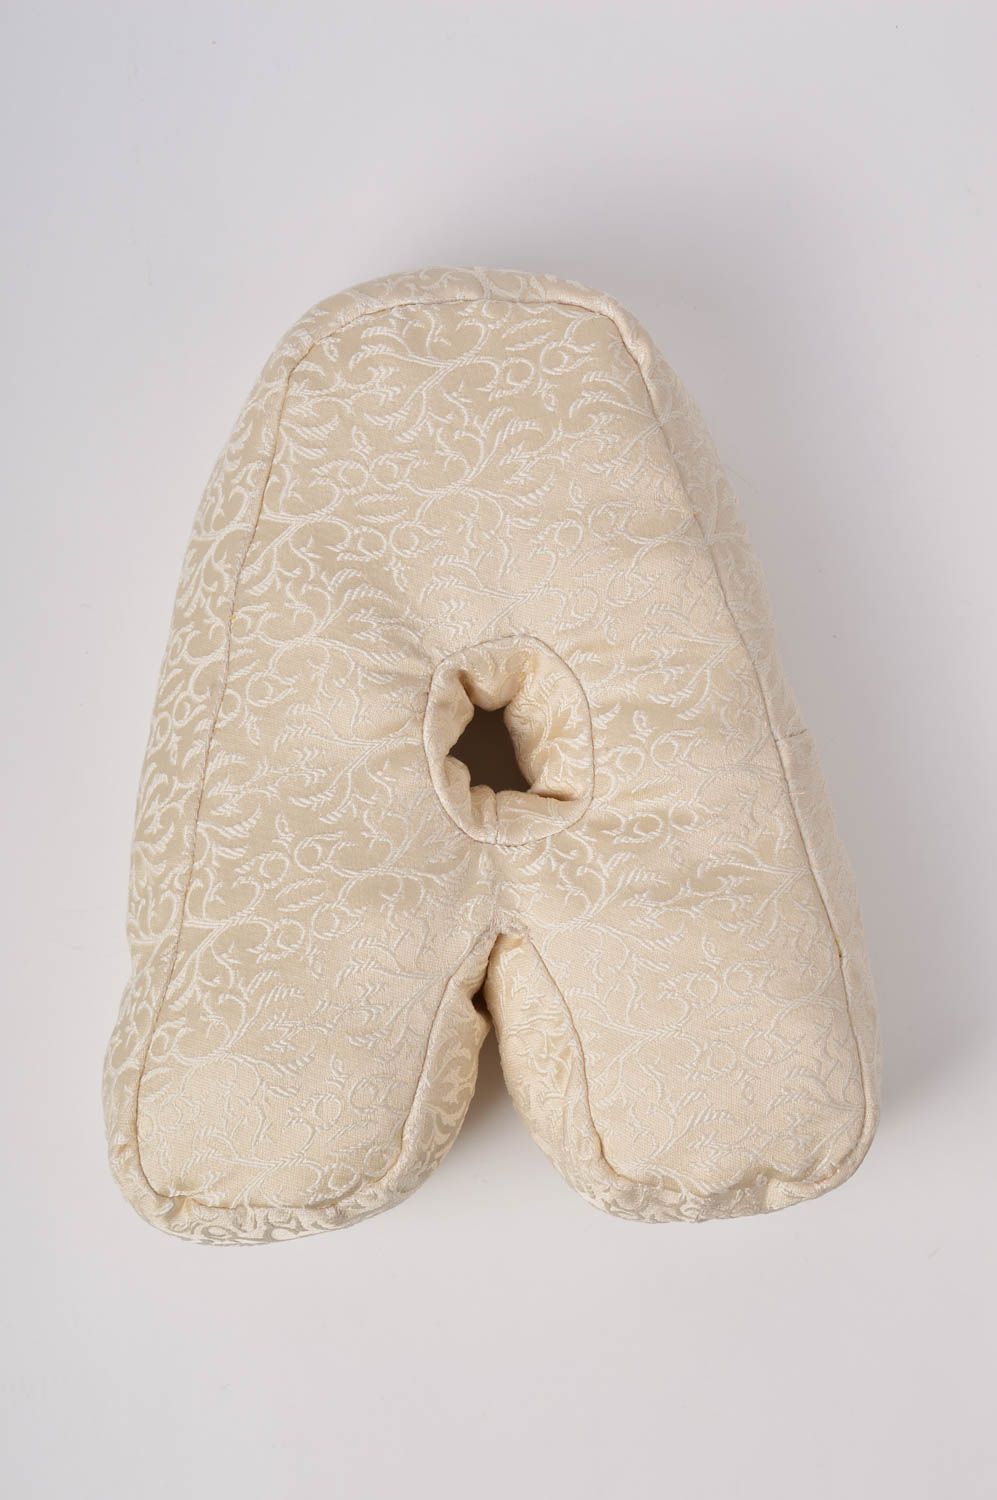 Декоративная подушка ручной работы подушка-буква из жаккарда мягкая буква А фото 3